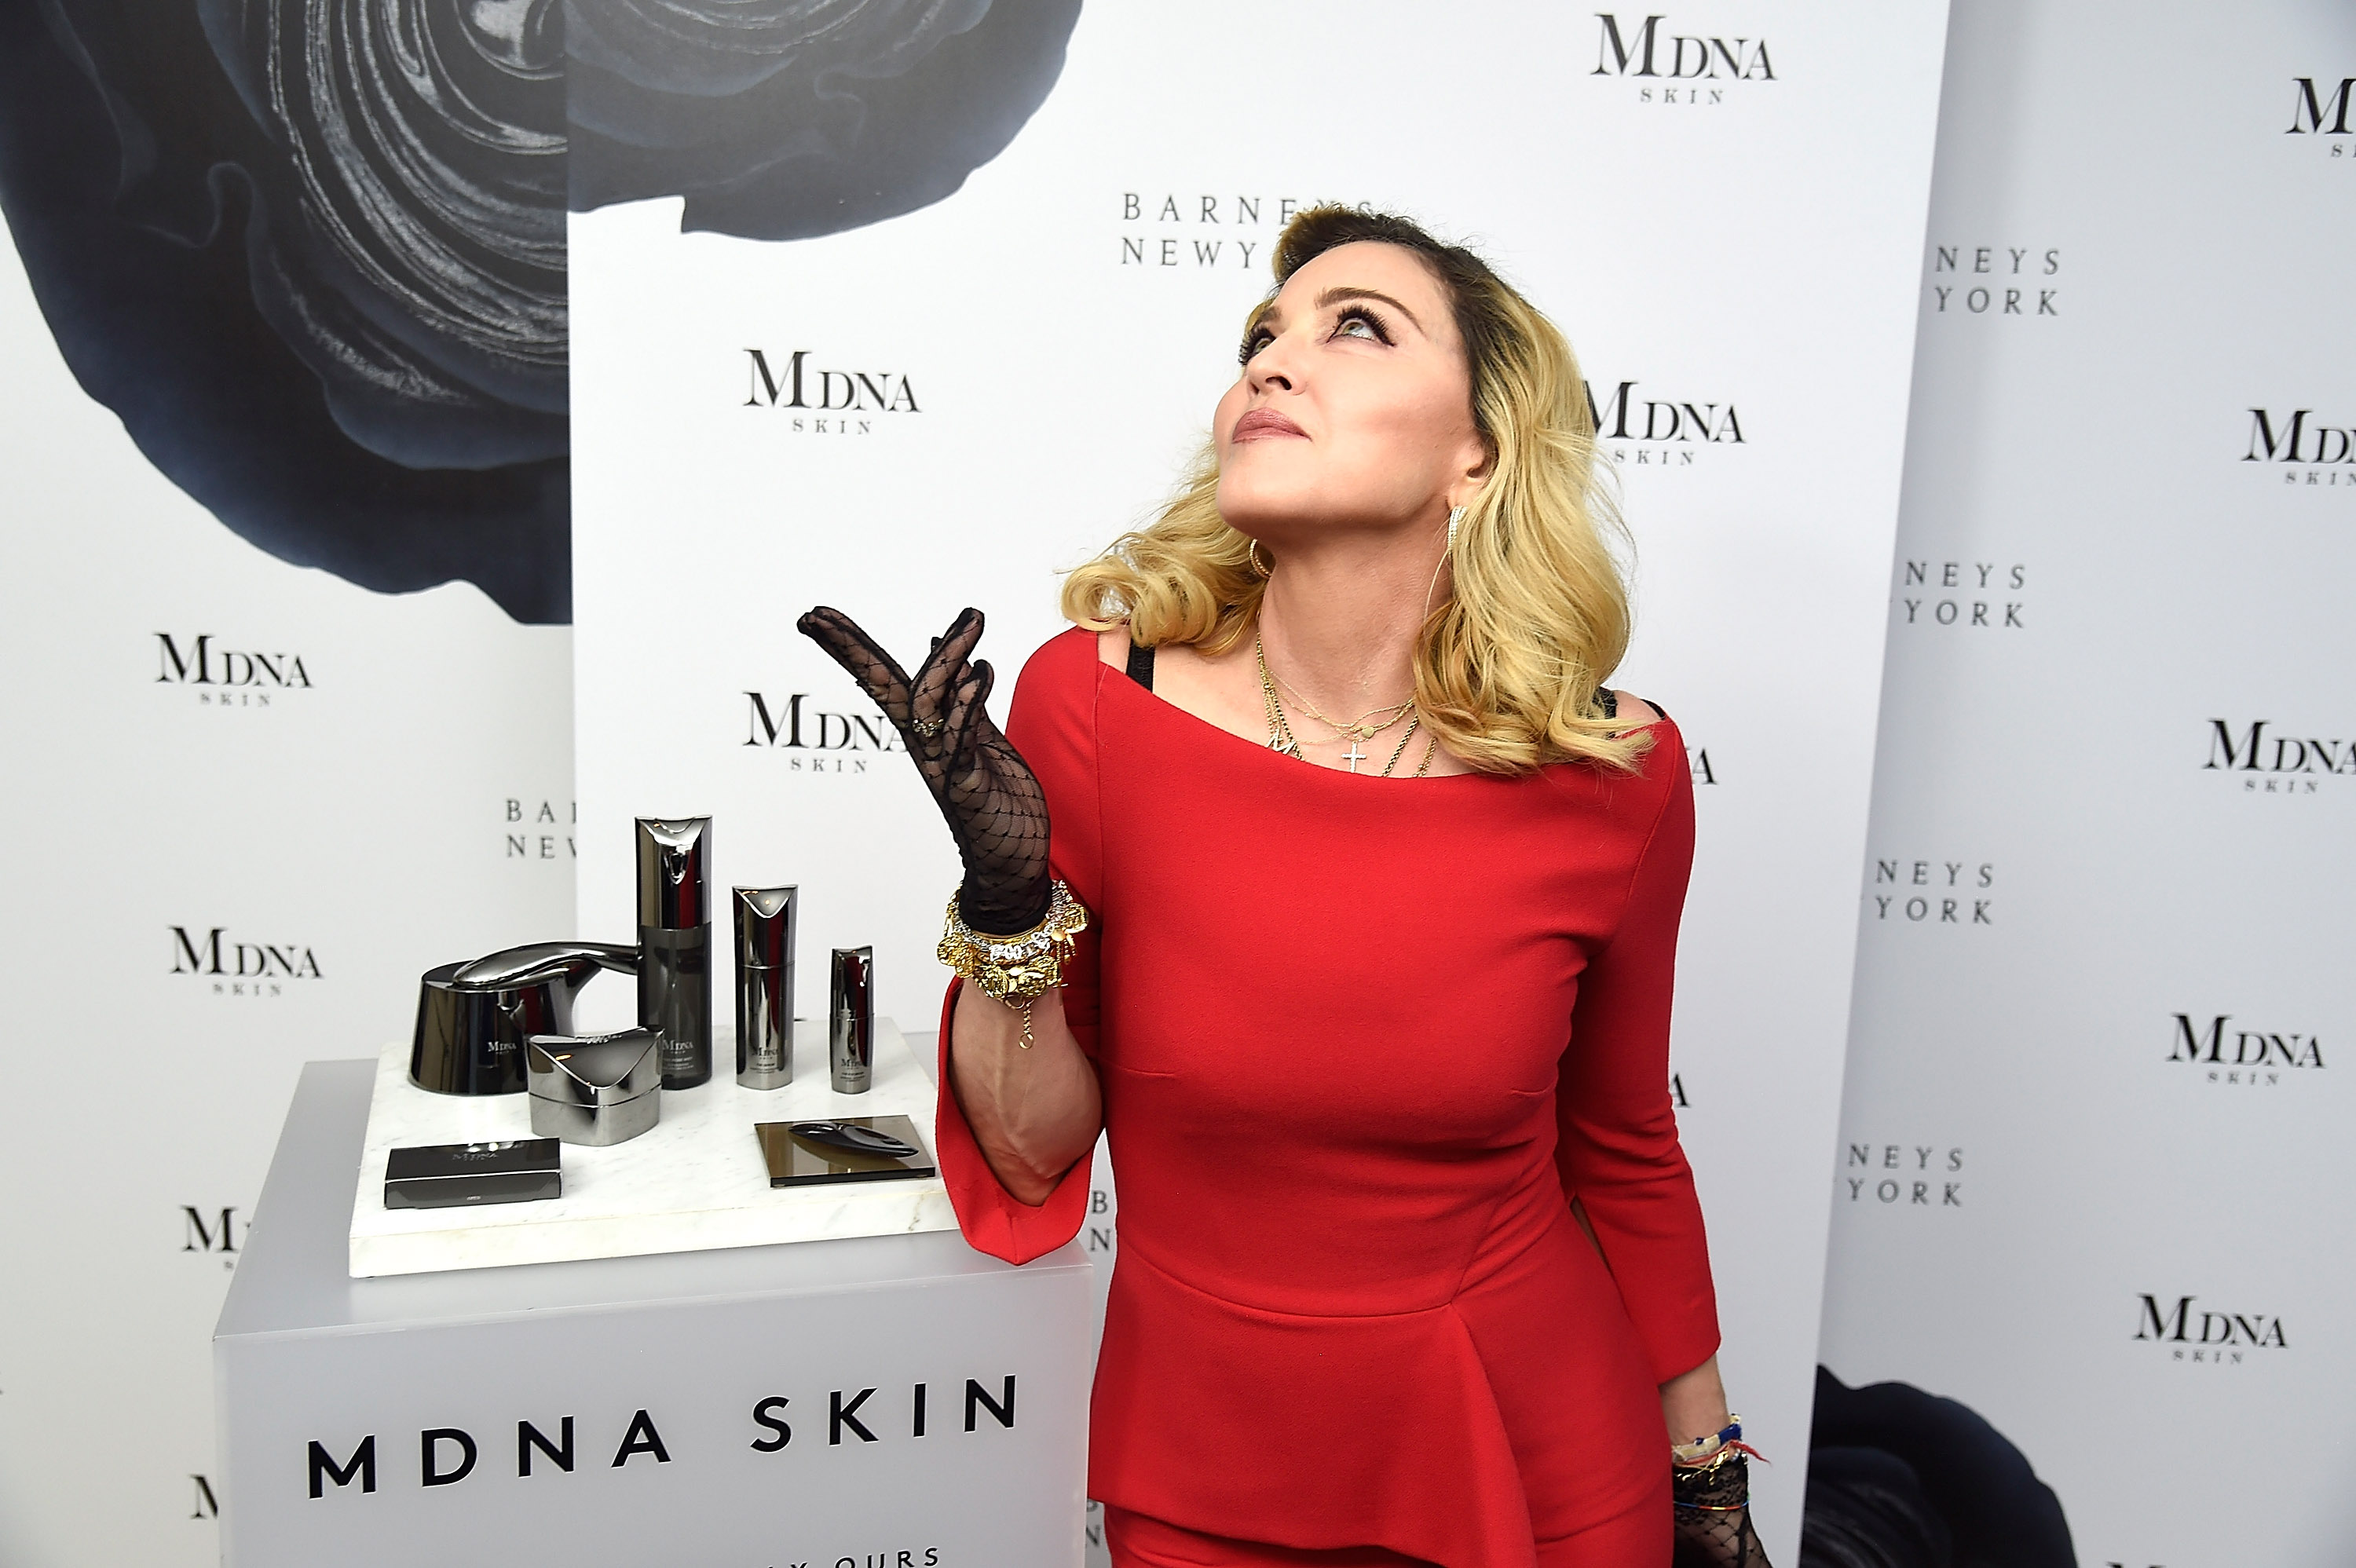 Madonna, MDNA Skincare